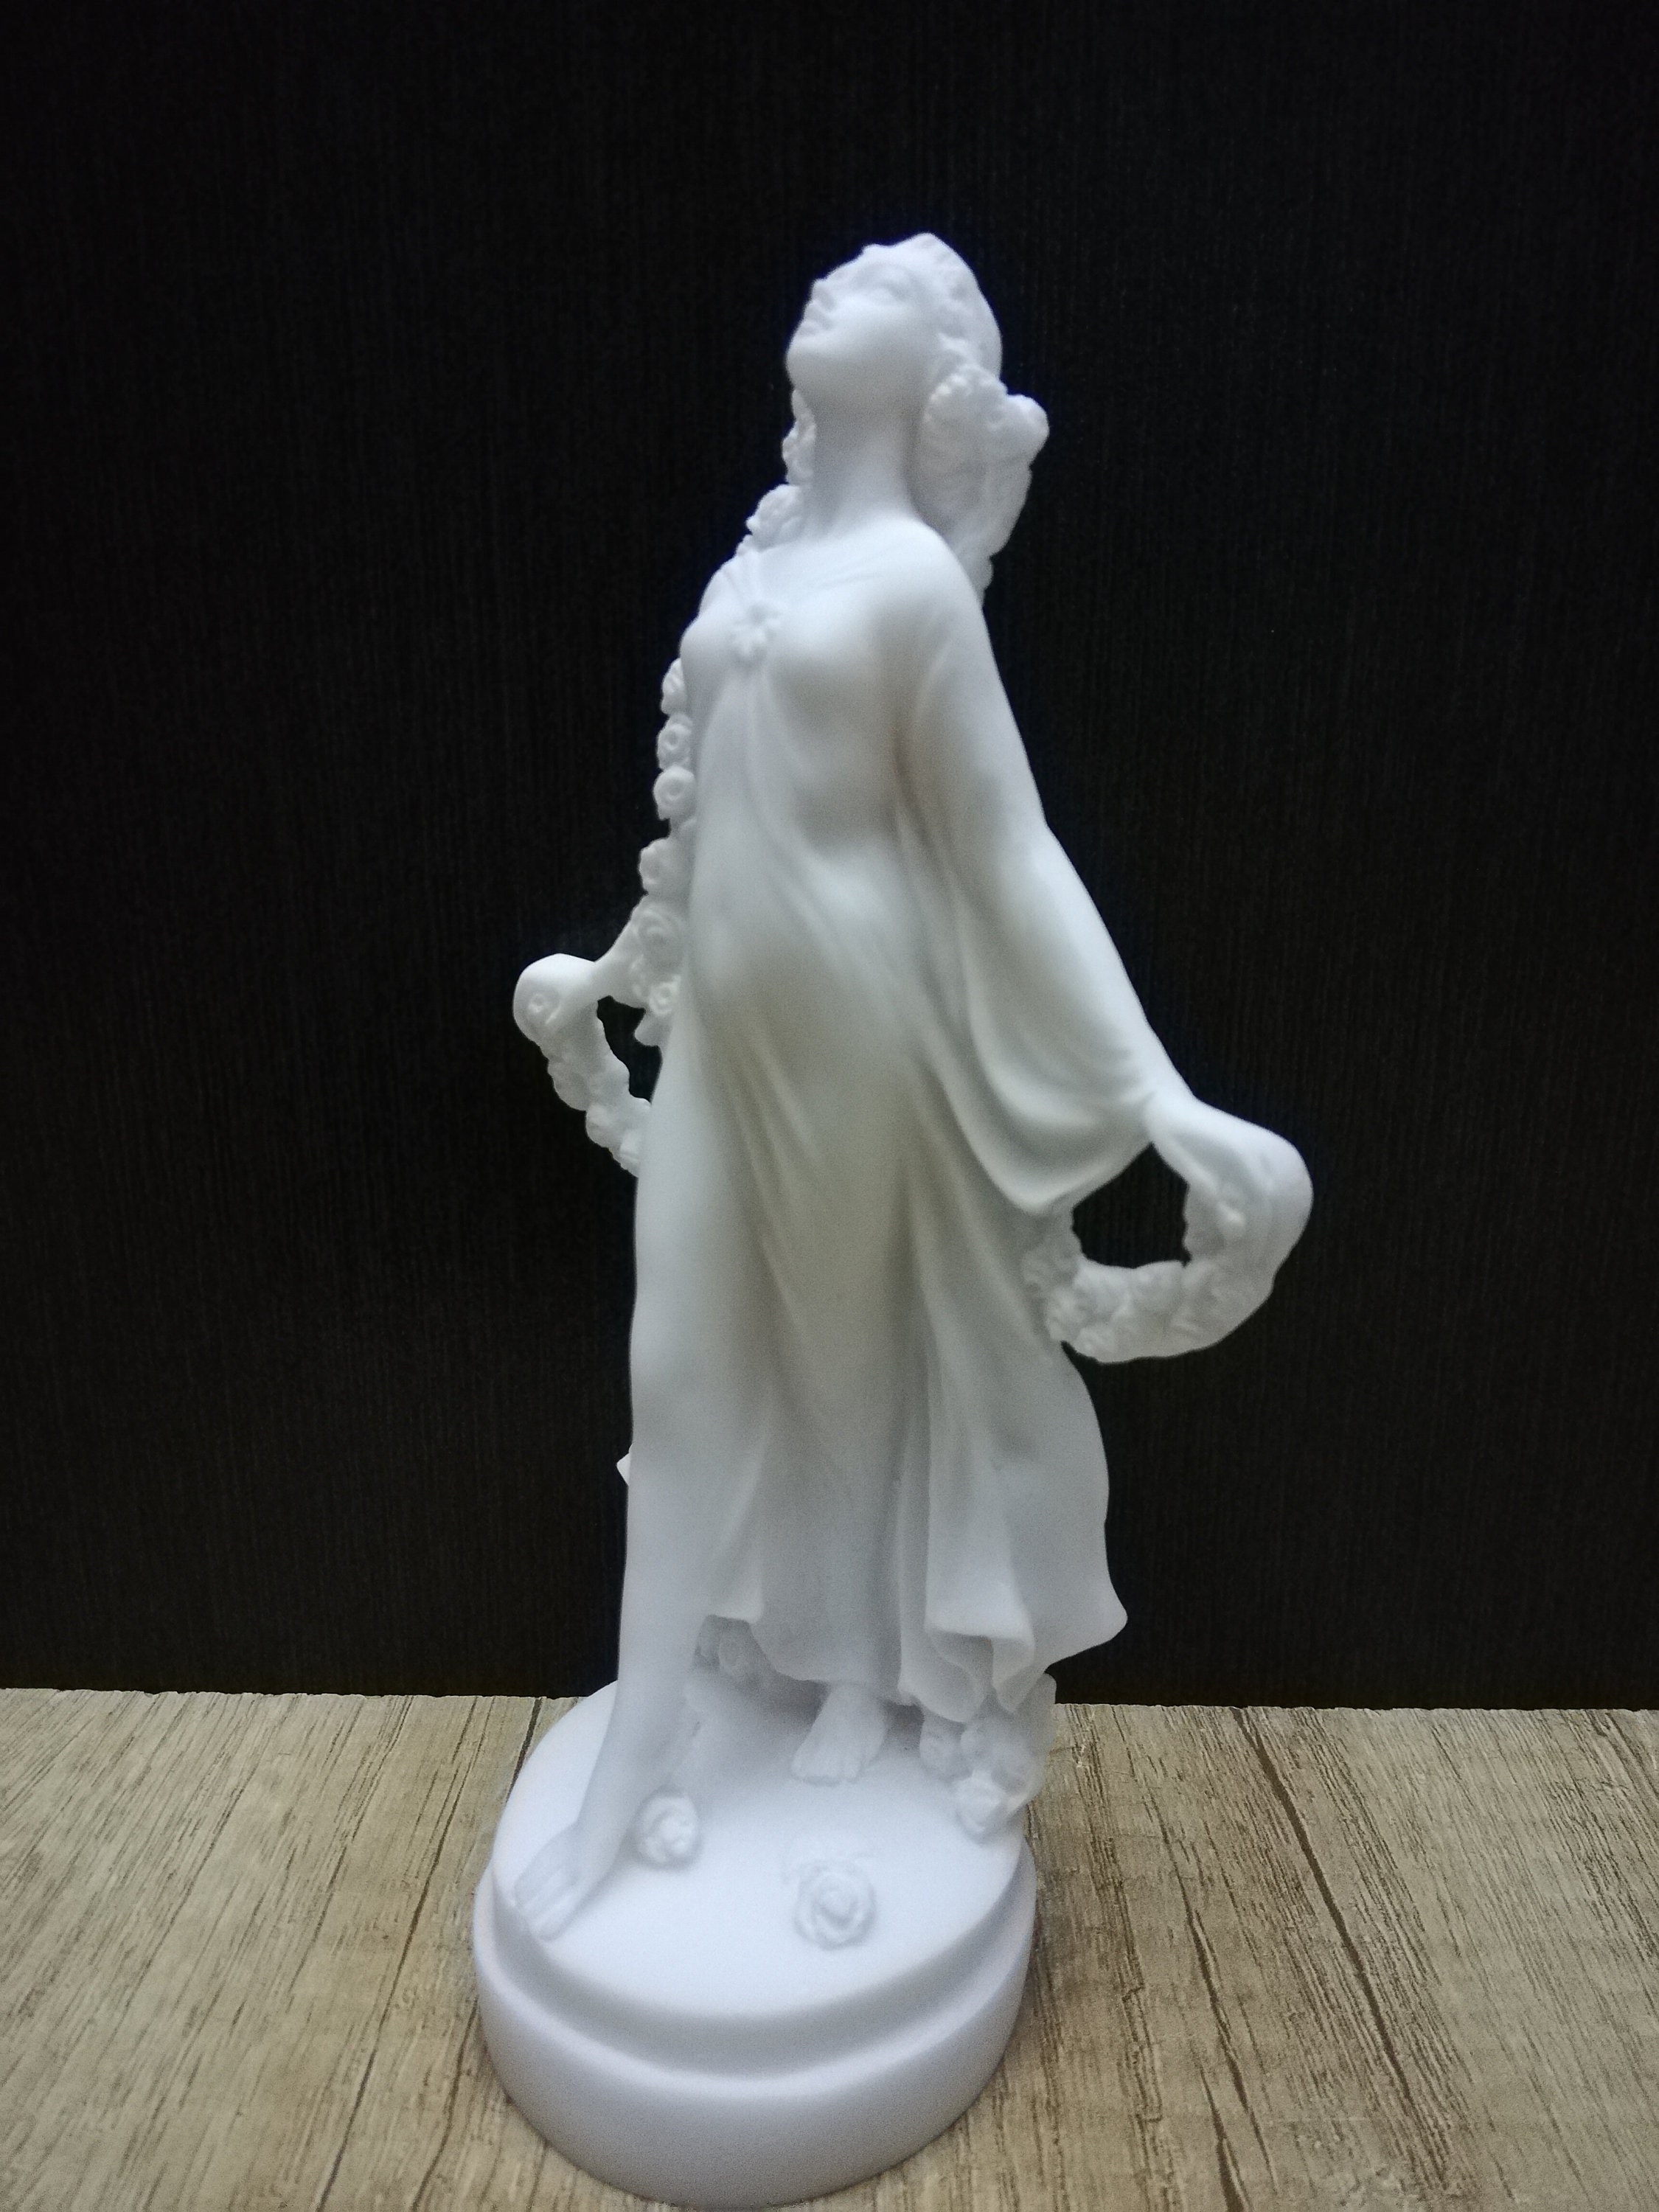 Proserpina Persephone Statue Goddess Of Cult Myths & Mysteries Greek  Sculpture